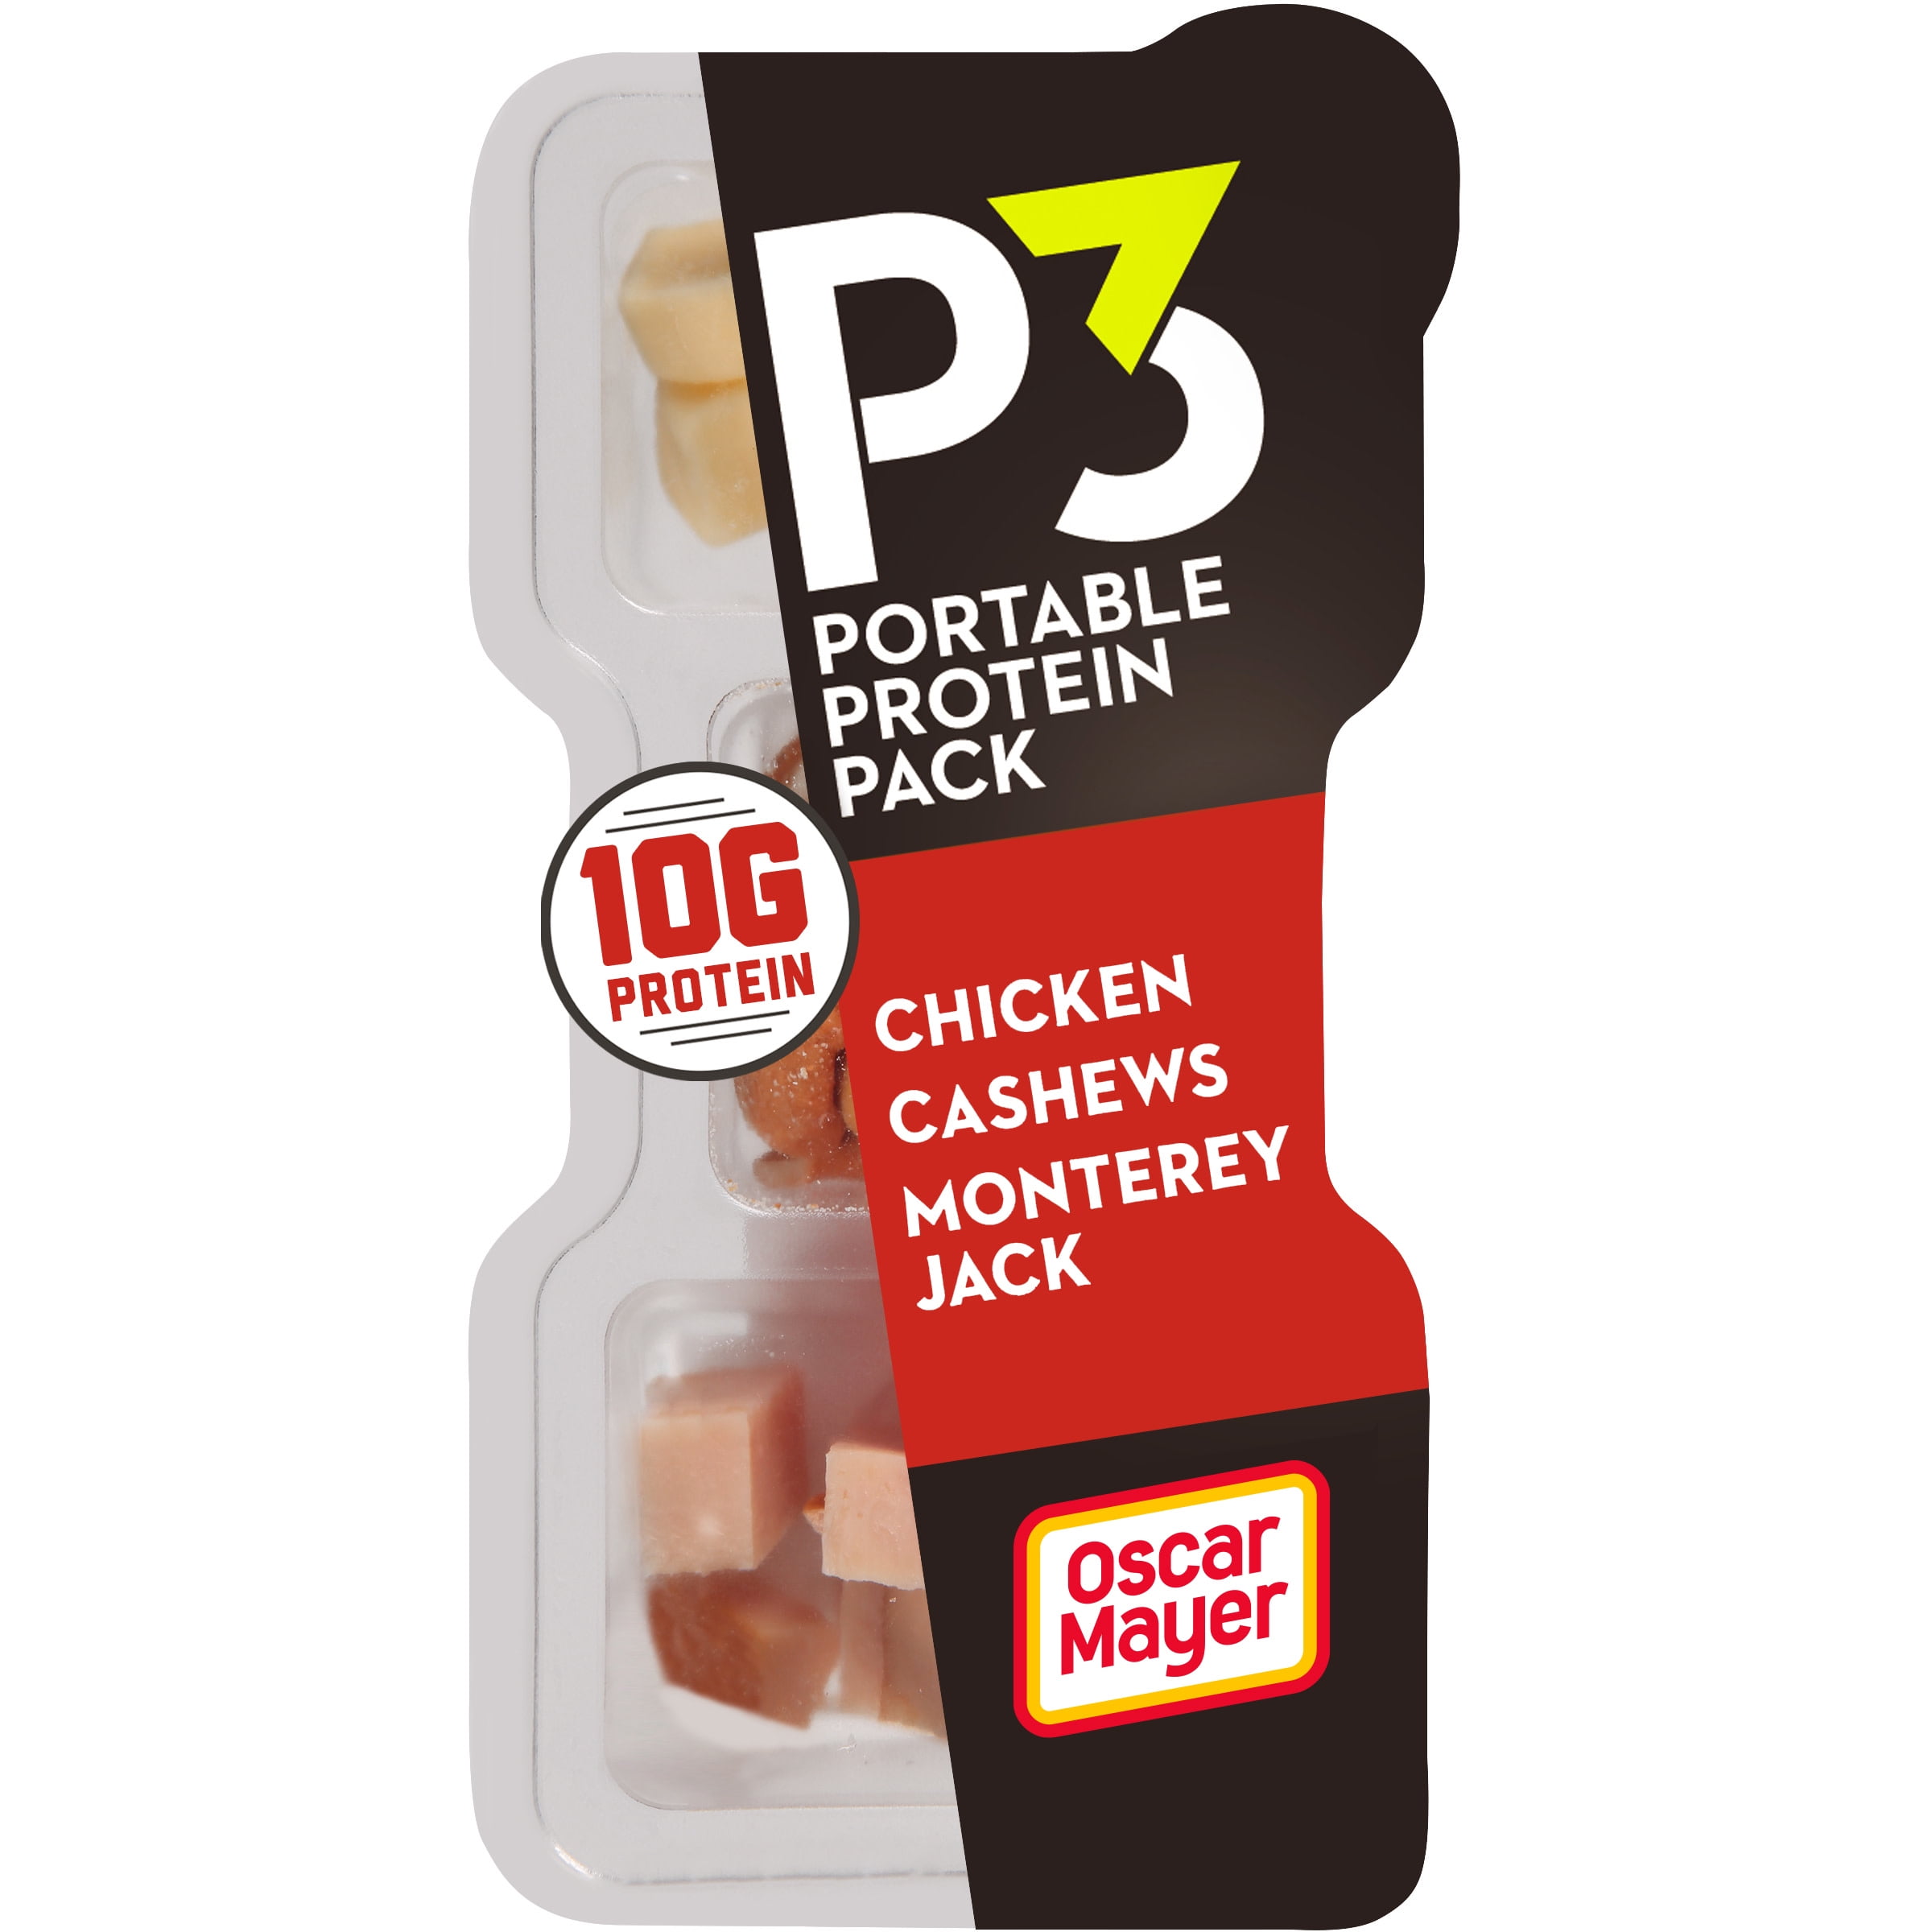 P3 Chicken, Cashews & Monterey Jack Cheese Protein Snack Pack, 2 oz Tray